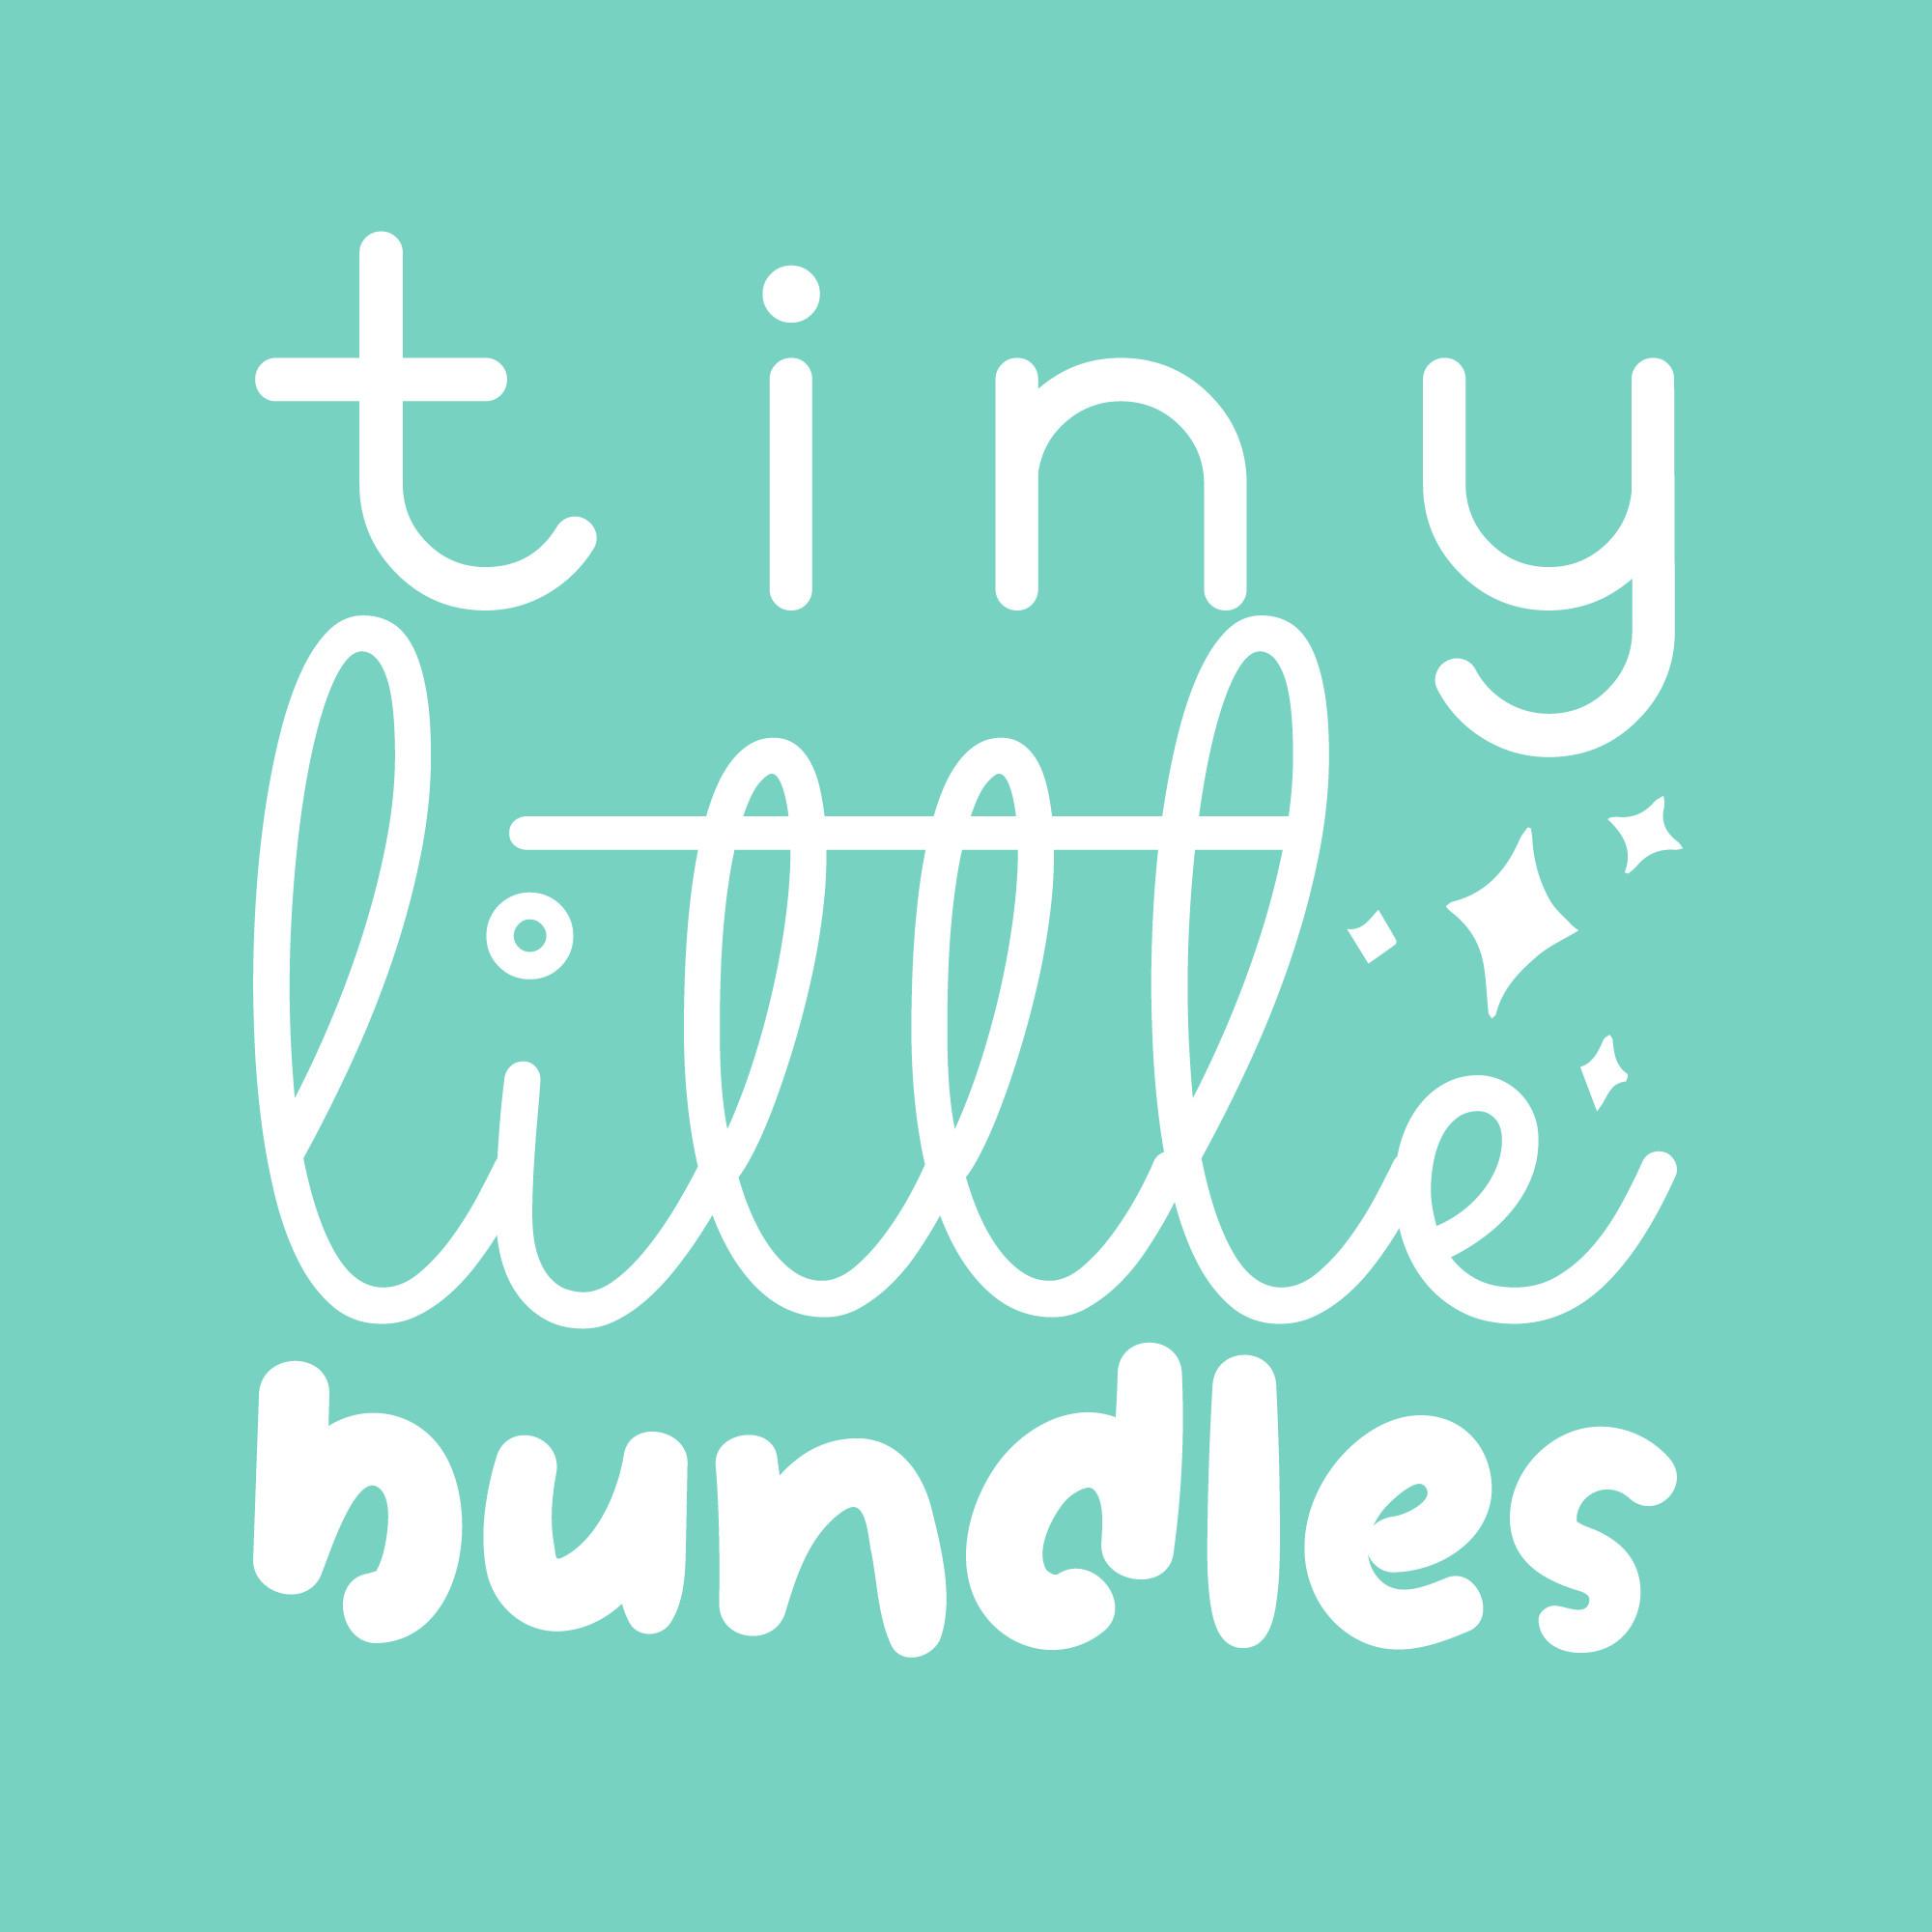 Tiny Little Bundles